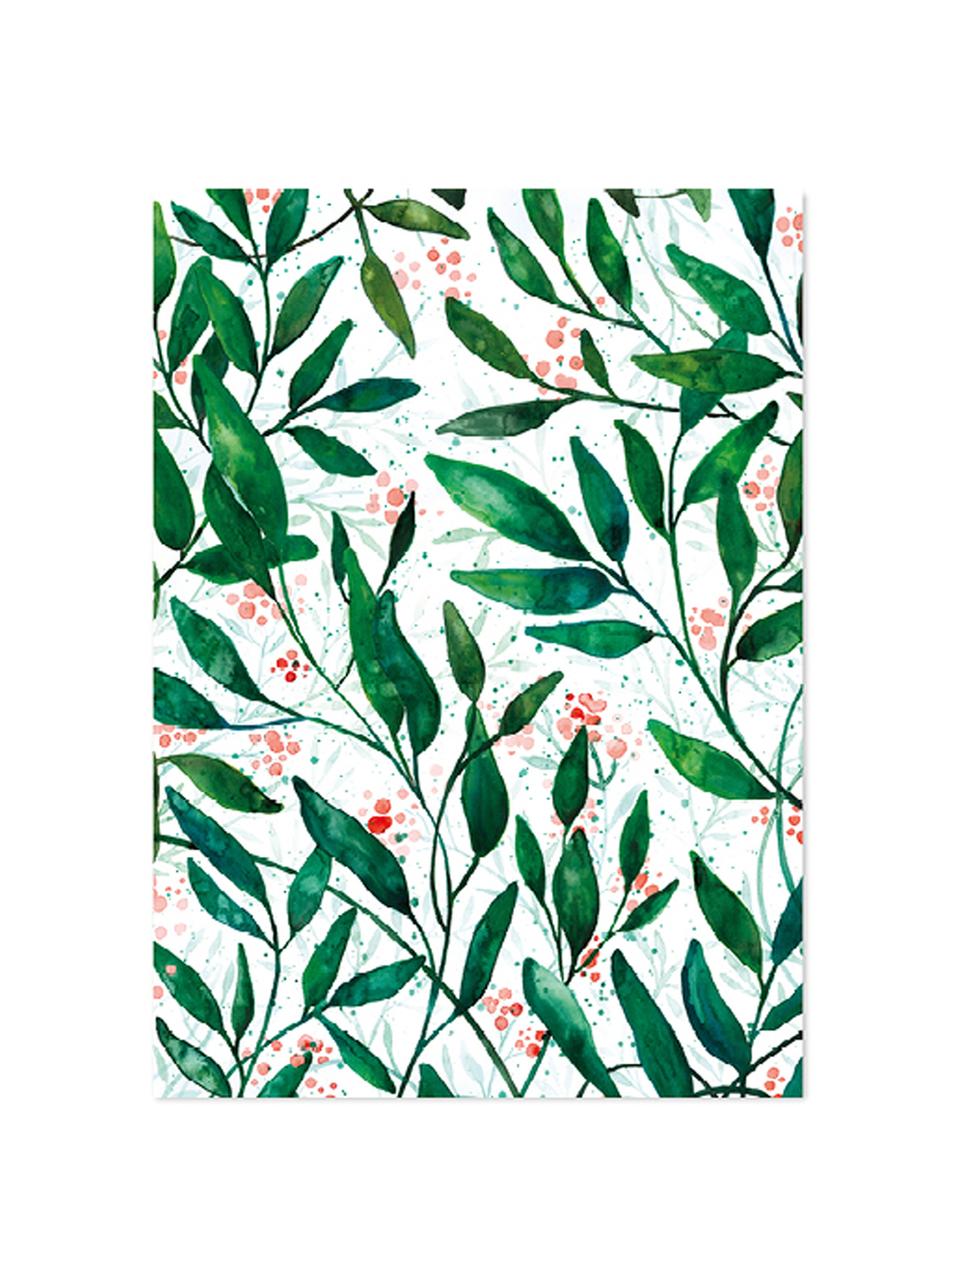 Rolka papieru prezentowego Green Leaves, 3 szt., Papier, Zielony, czerwony, biały, S 50 x W 70 cm